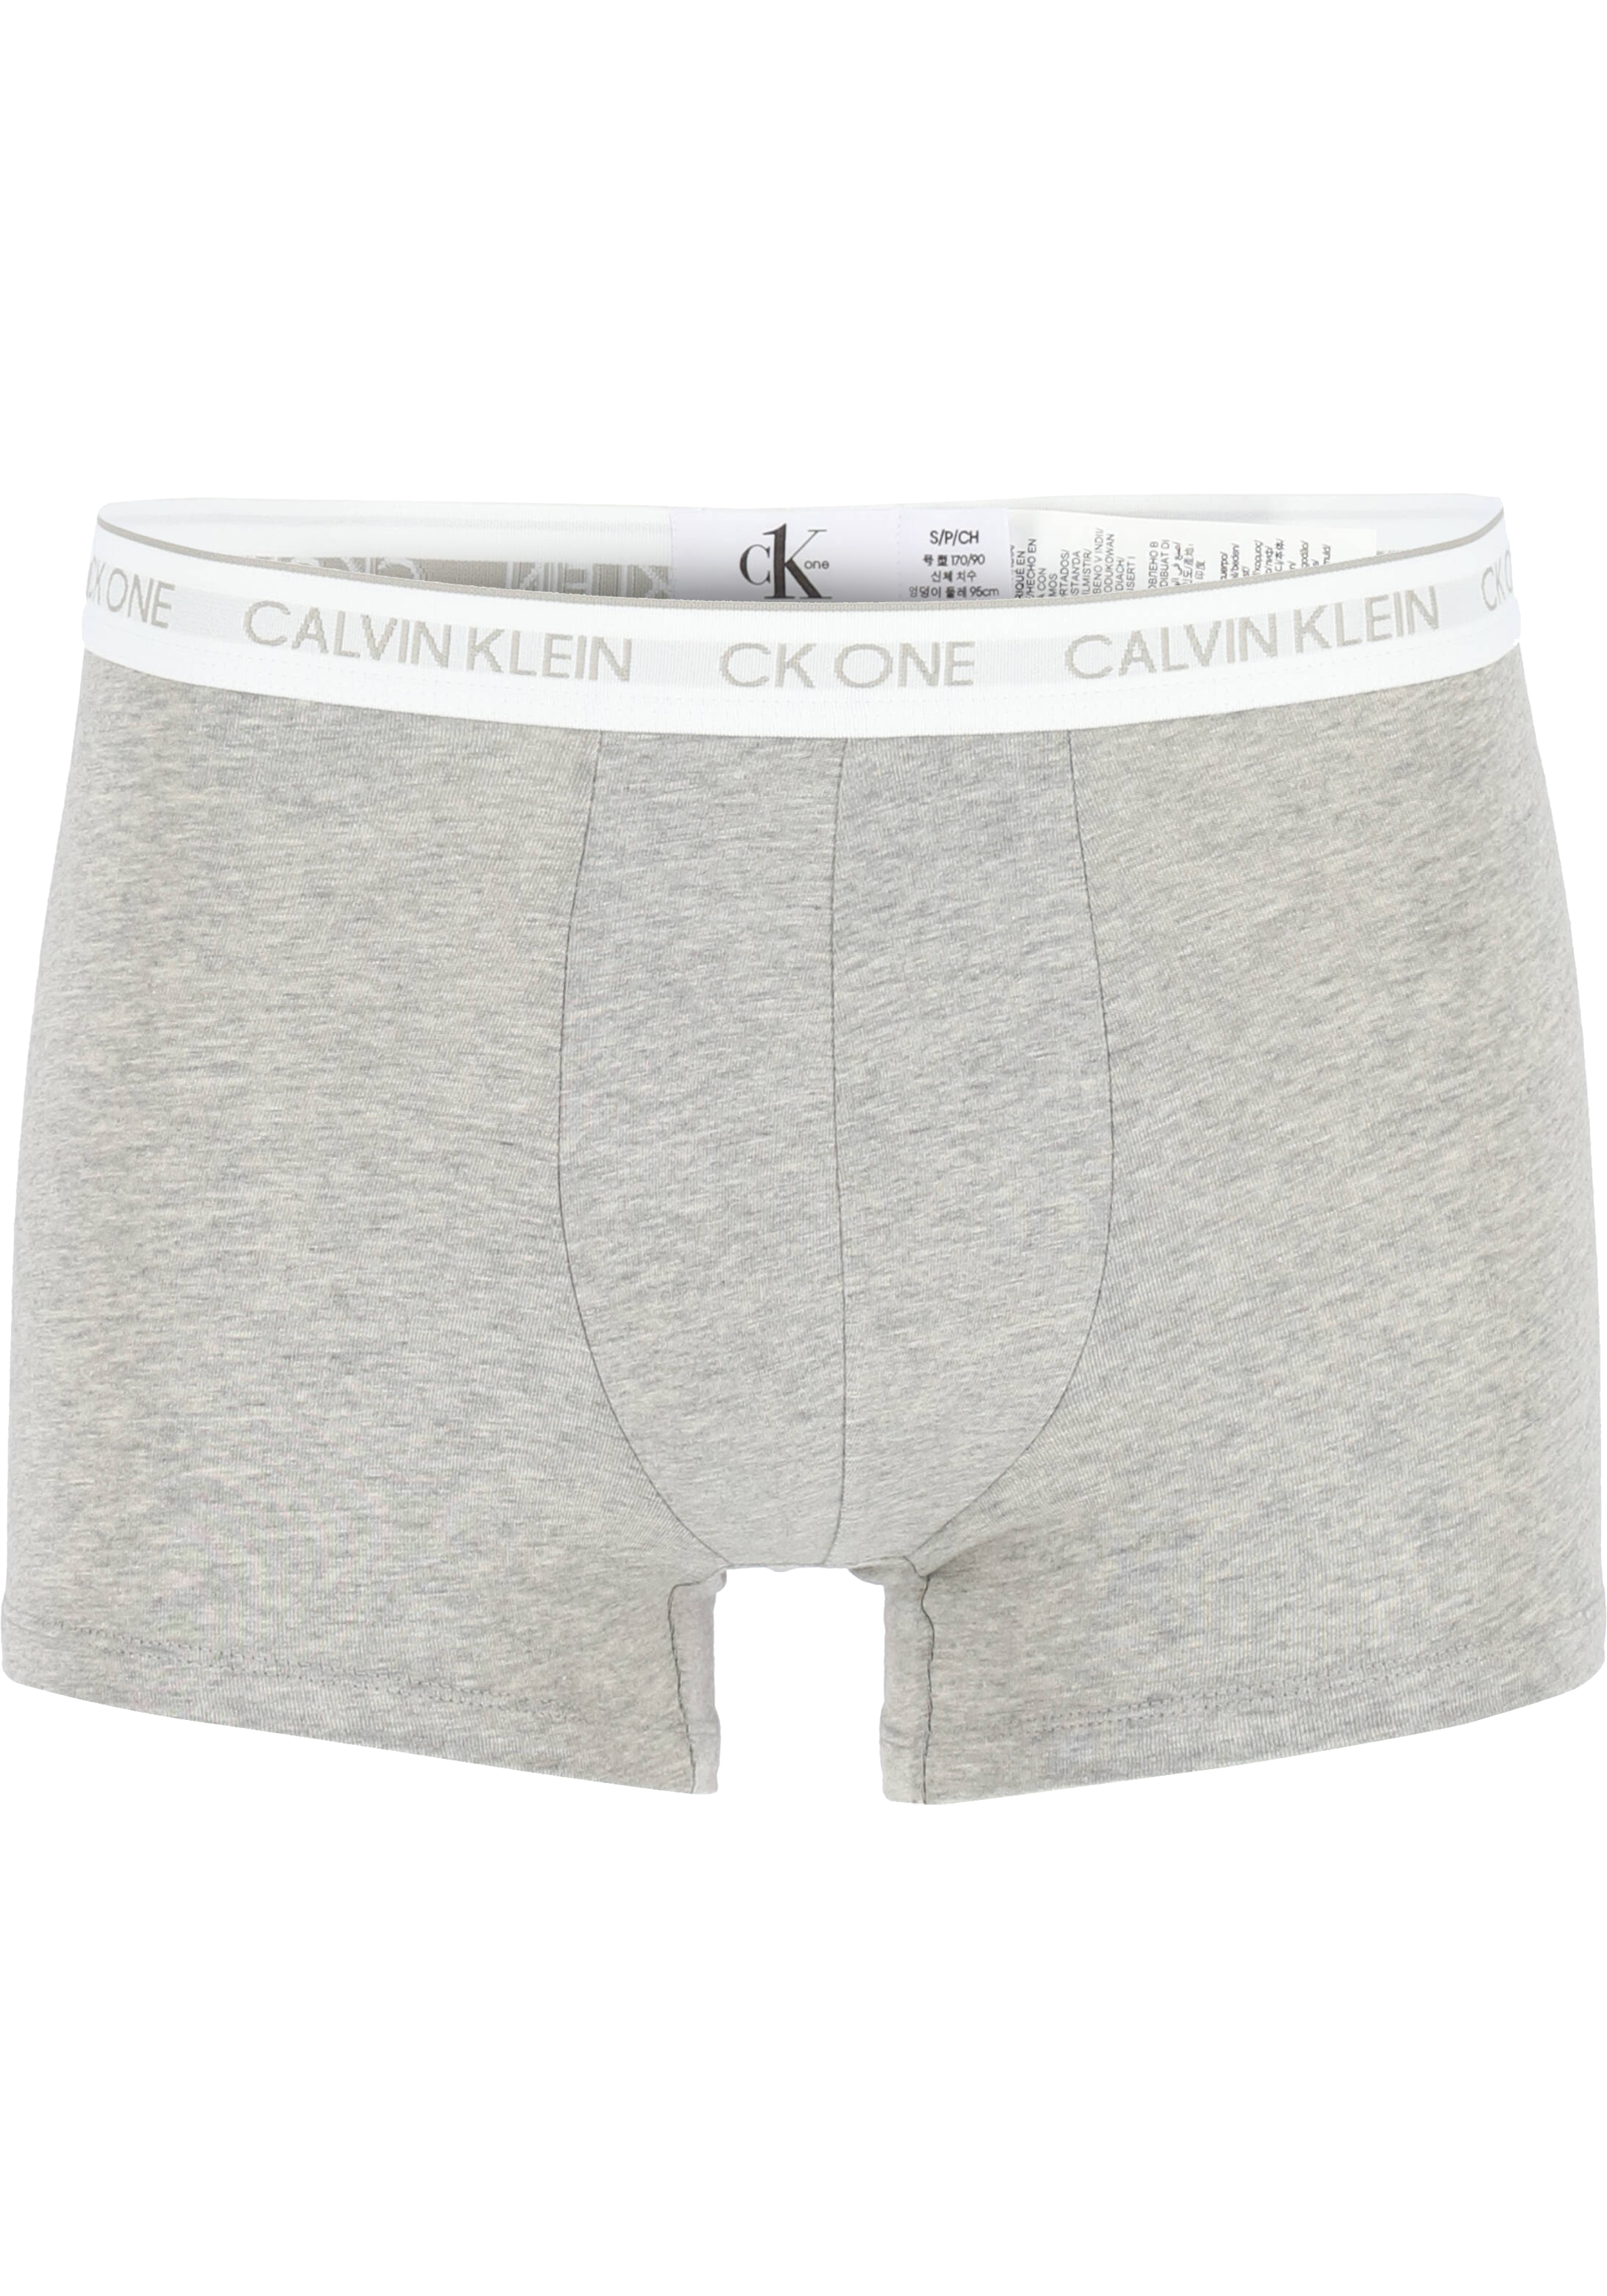 Betsy Trotwood Minnaar straal Calvin Klein CK ONE Cotton trunk (1-pack), heren boxer normale lengte,... -  Shop de nieuwste voorjaarsmode